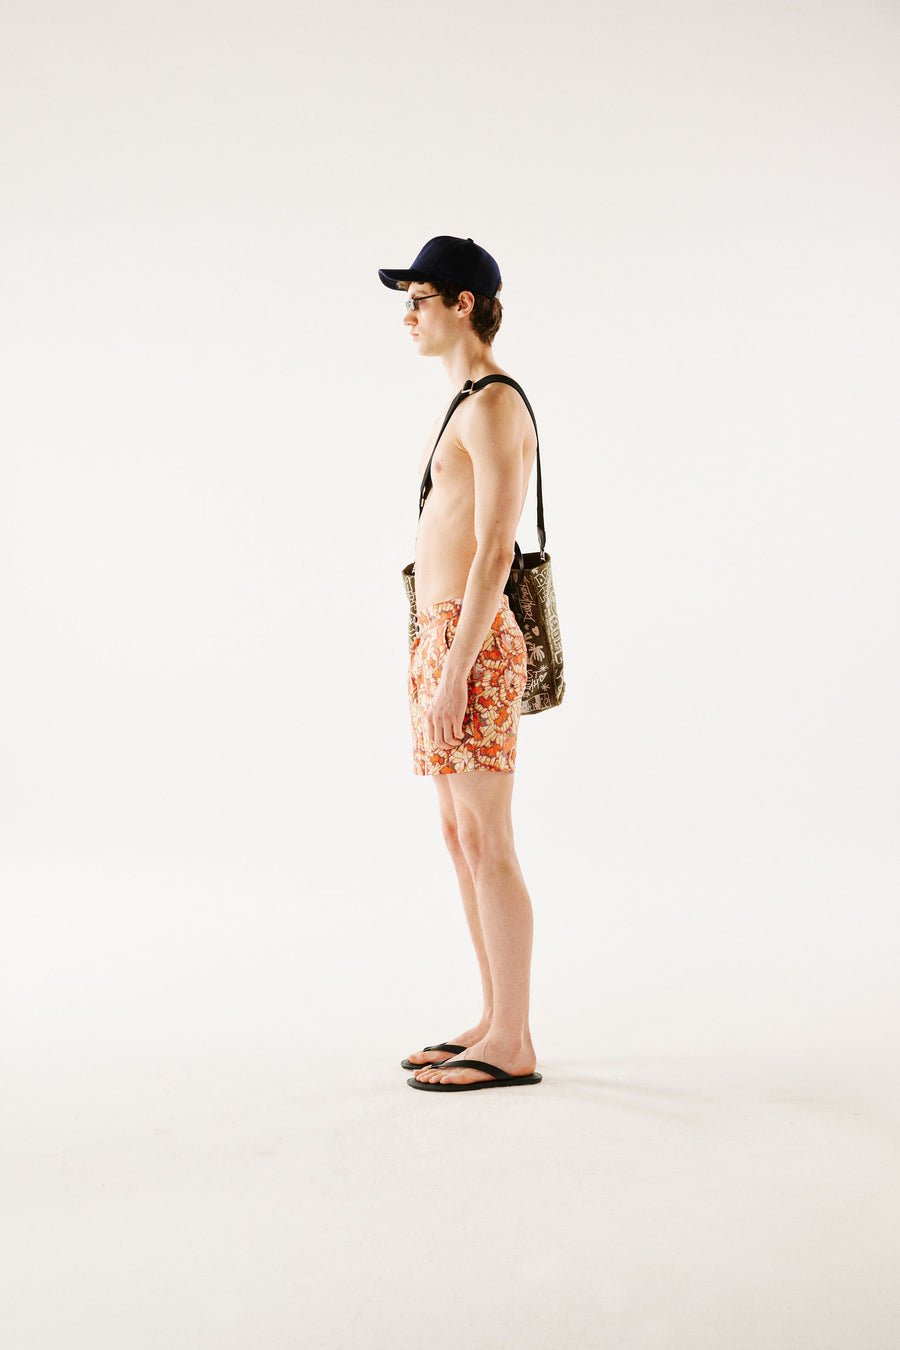 BORA - Slim-fit short-length printed swim shorts